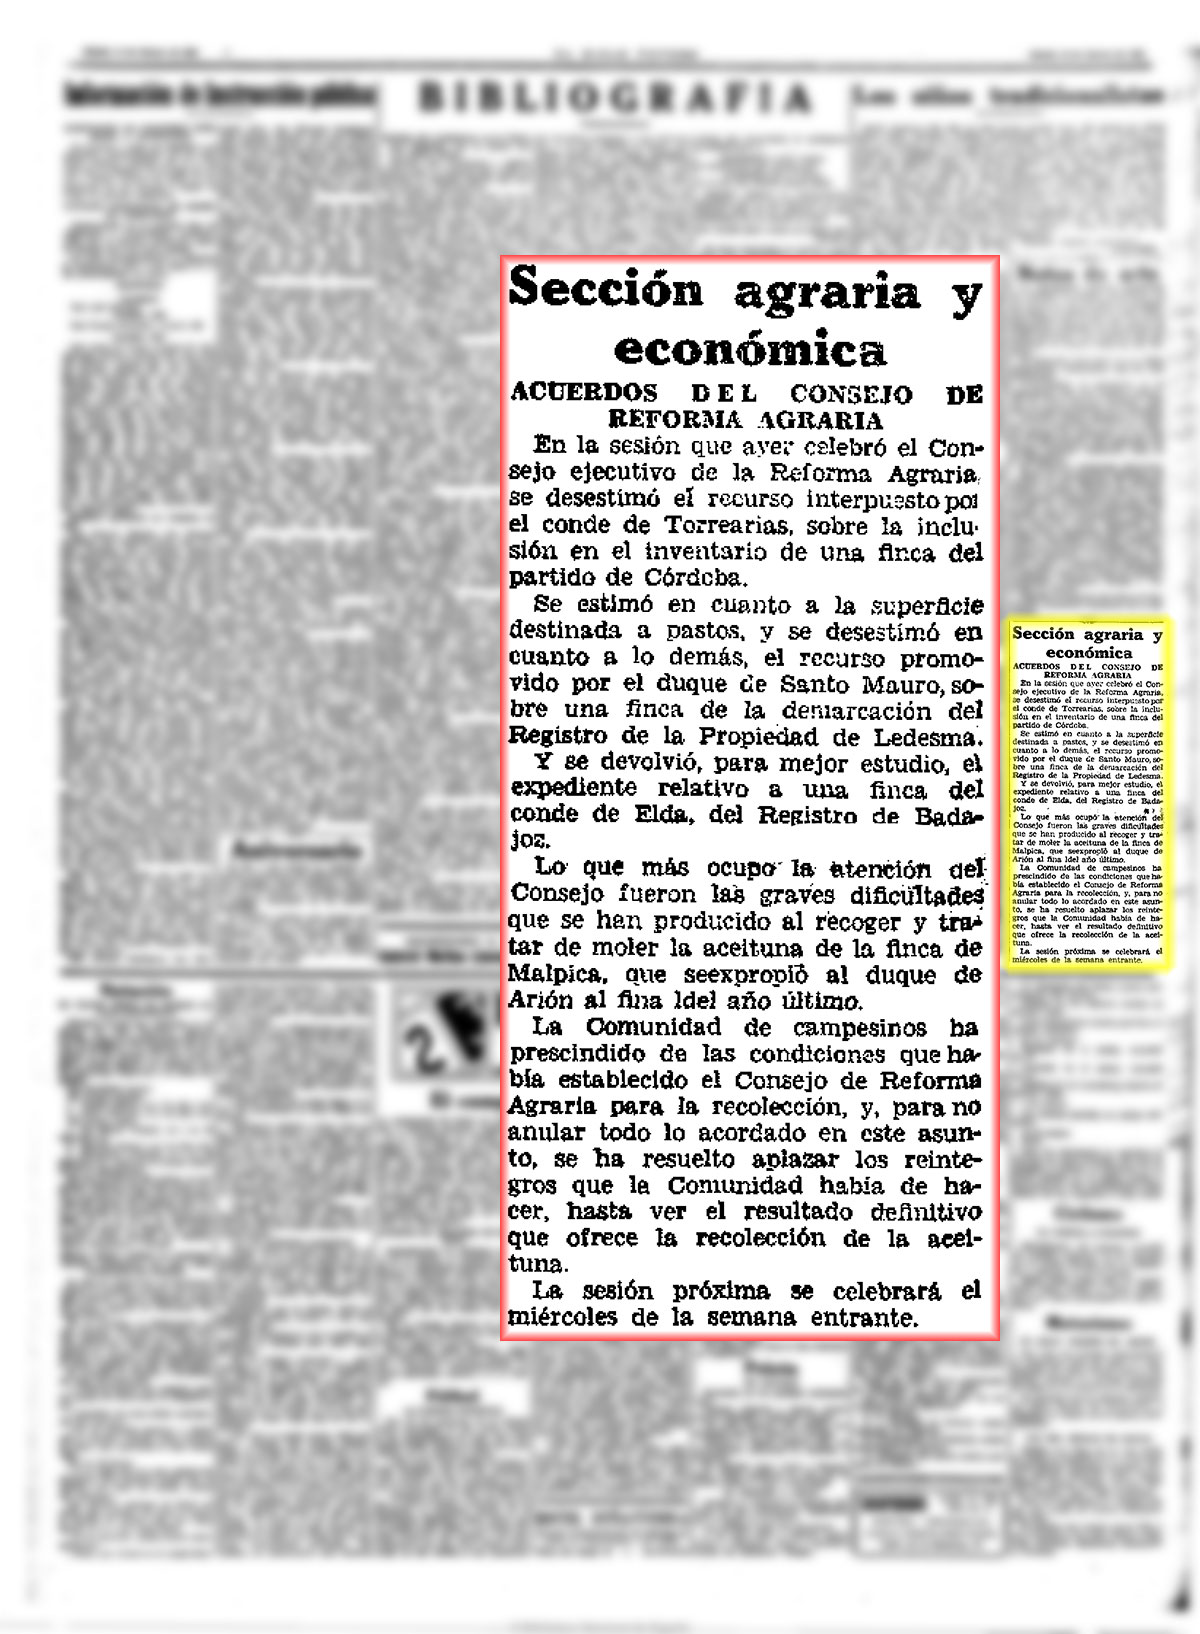 Acuerdos del consejo Agrario. sobre la aceituna. El Siglo futuro 10/2/1934, n.º 8.138